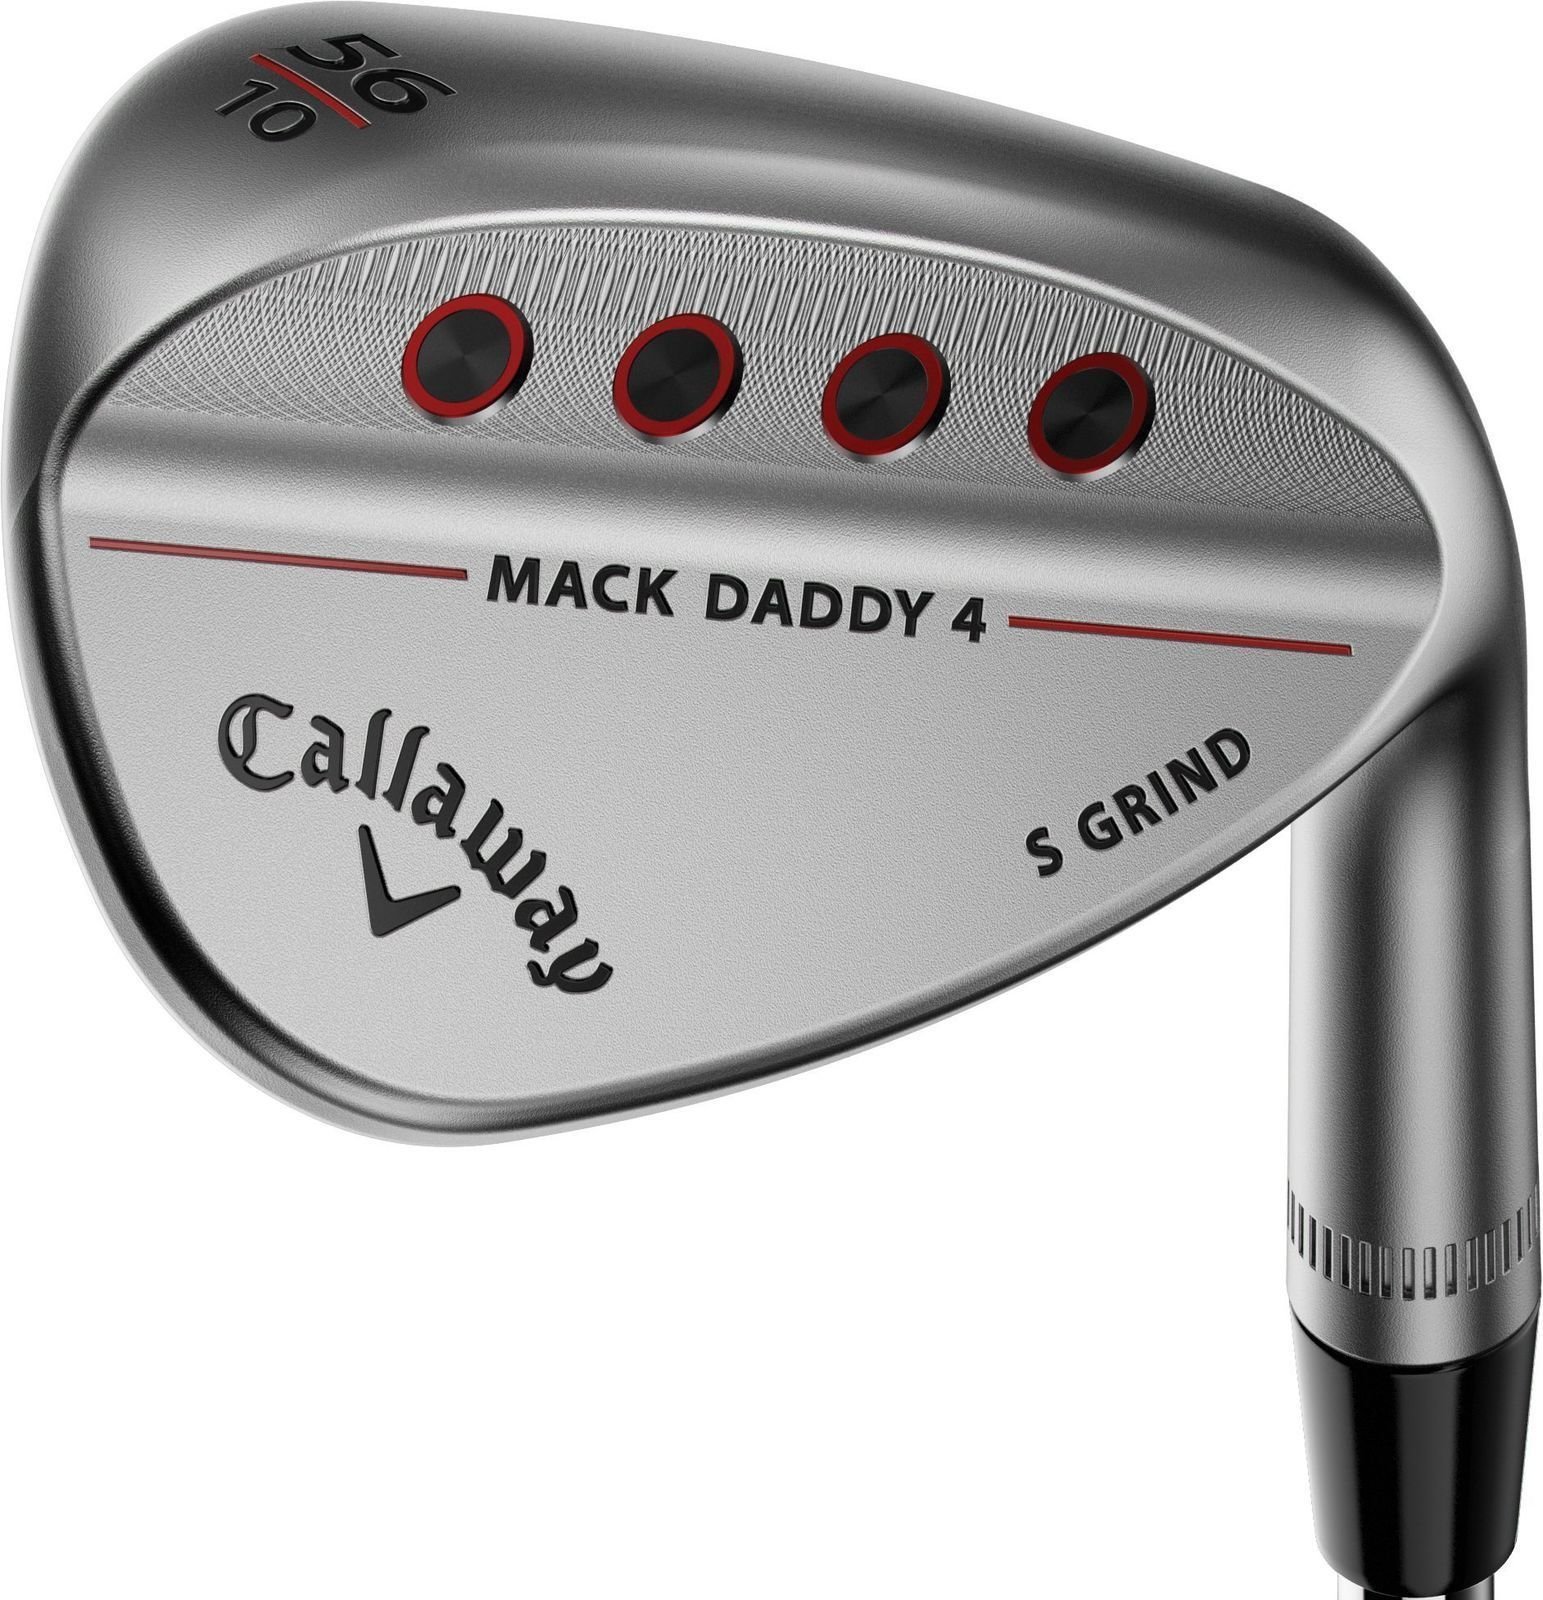 Λέσχες γκολφ - wedge Callaway Mack Daddy 4 Chrome Wedge 48-10 S-Grind Right Hand